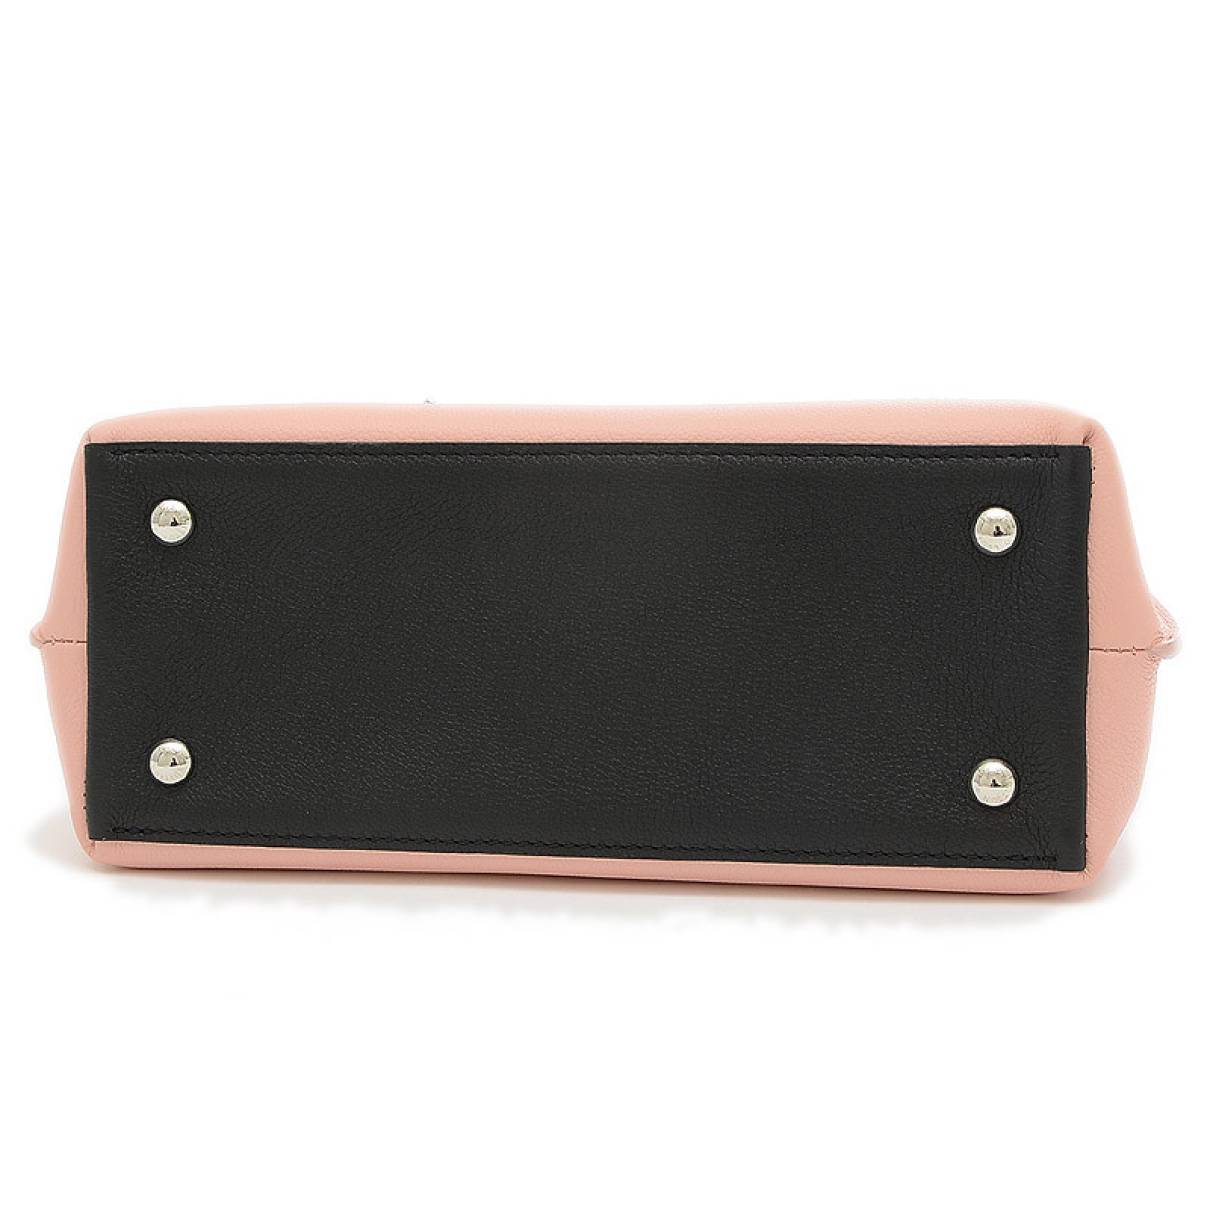 Louis Vuitton - Authenticated Lockme Ever Handbag - Leather Multicolour Plain for Women, Good Condition